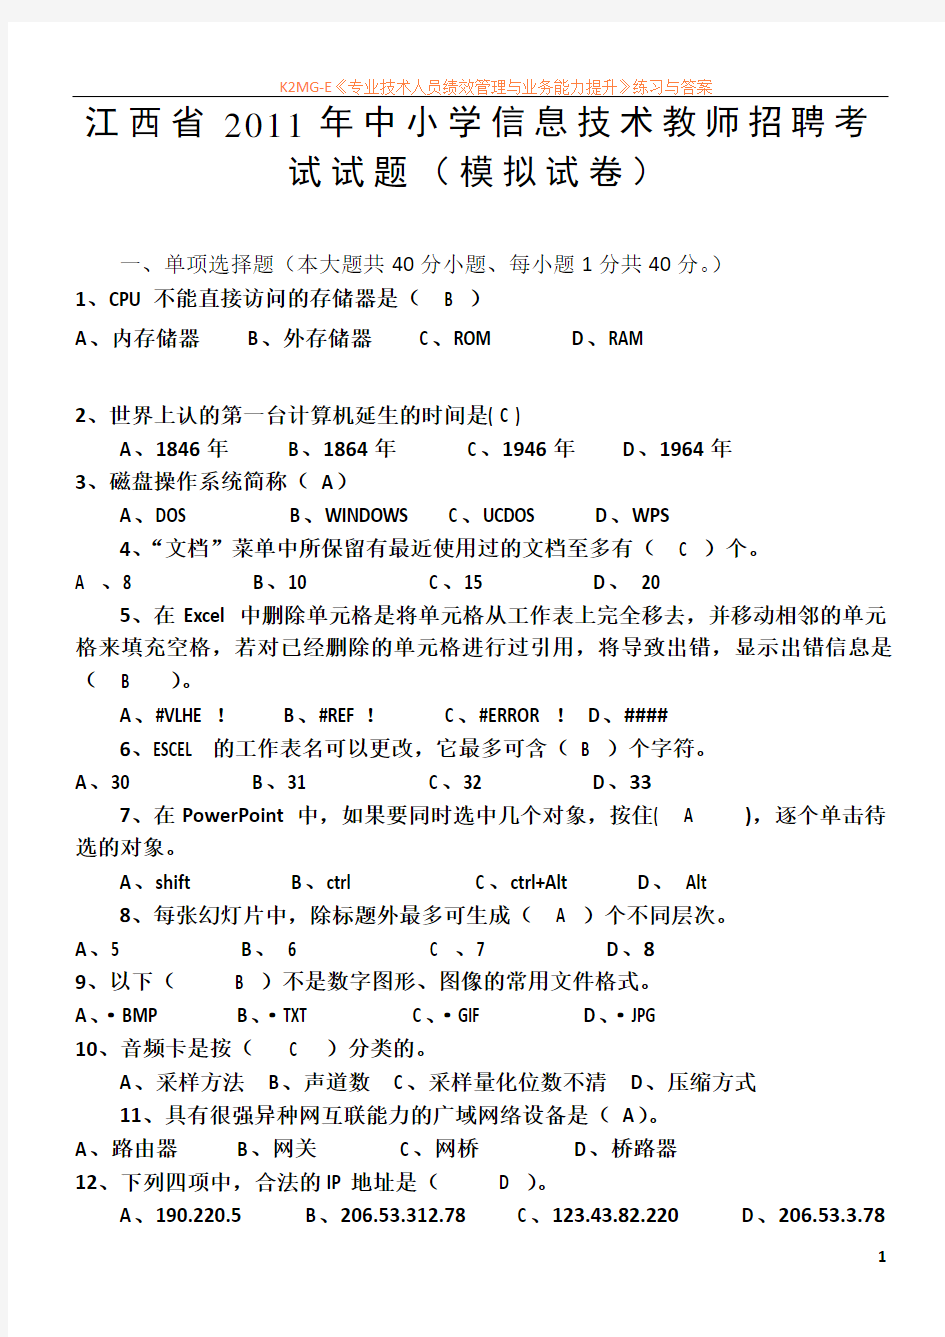 江西省2011年中小学信息技术教师招聘考试试题(模拟试卷)